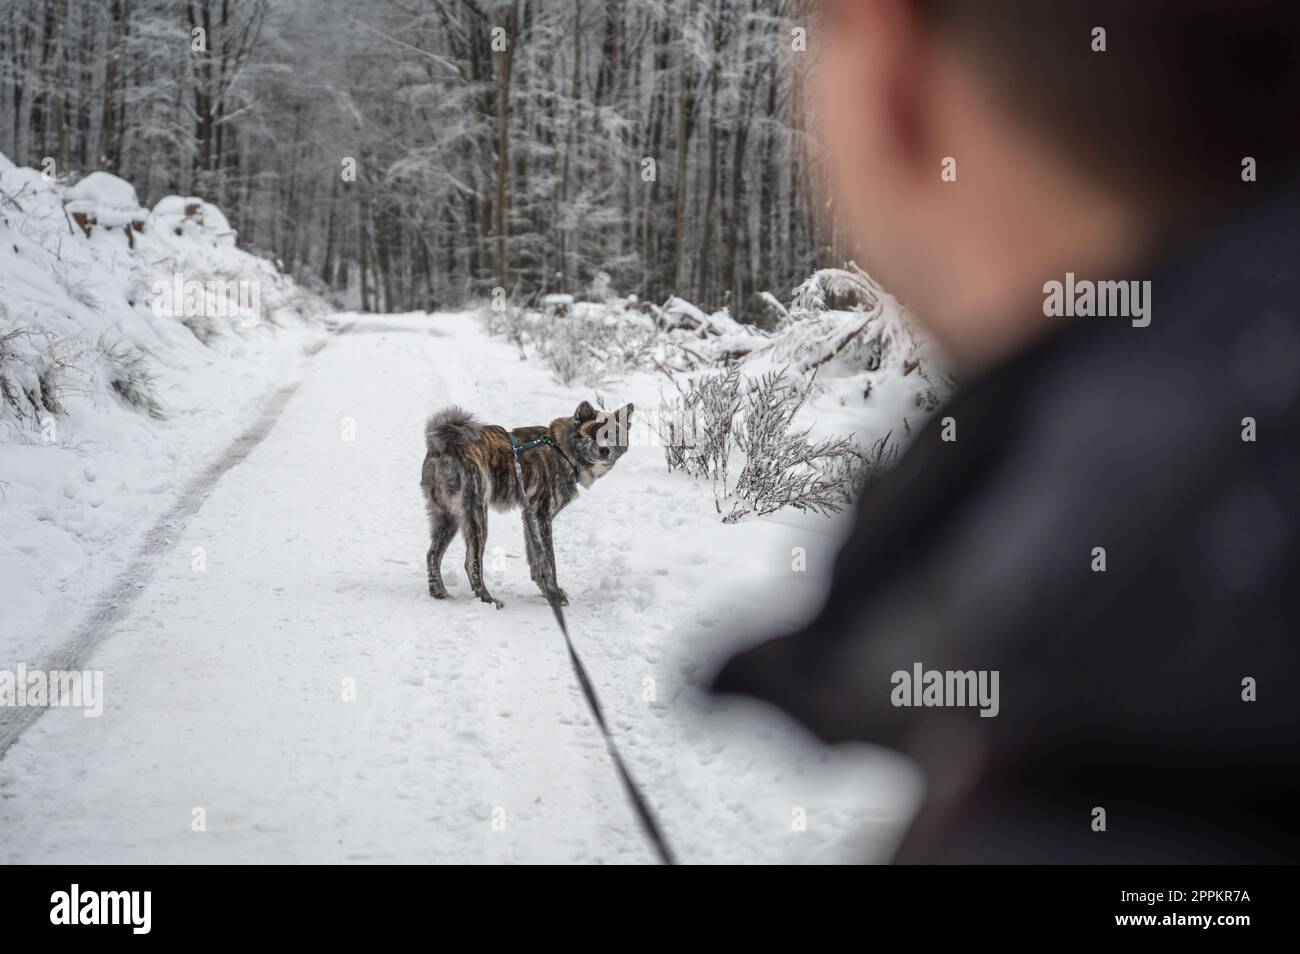 Ein junger Mann mit kurzen braunen Haaren geht im Winter mit seinem grauen akita inu Hund im Wald spazieren, wobei er viel Schnee hat. Beide schauen sich an und konzentrieren sich auf den Hintergrund Stockfoto